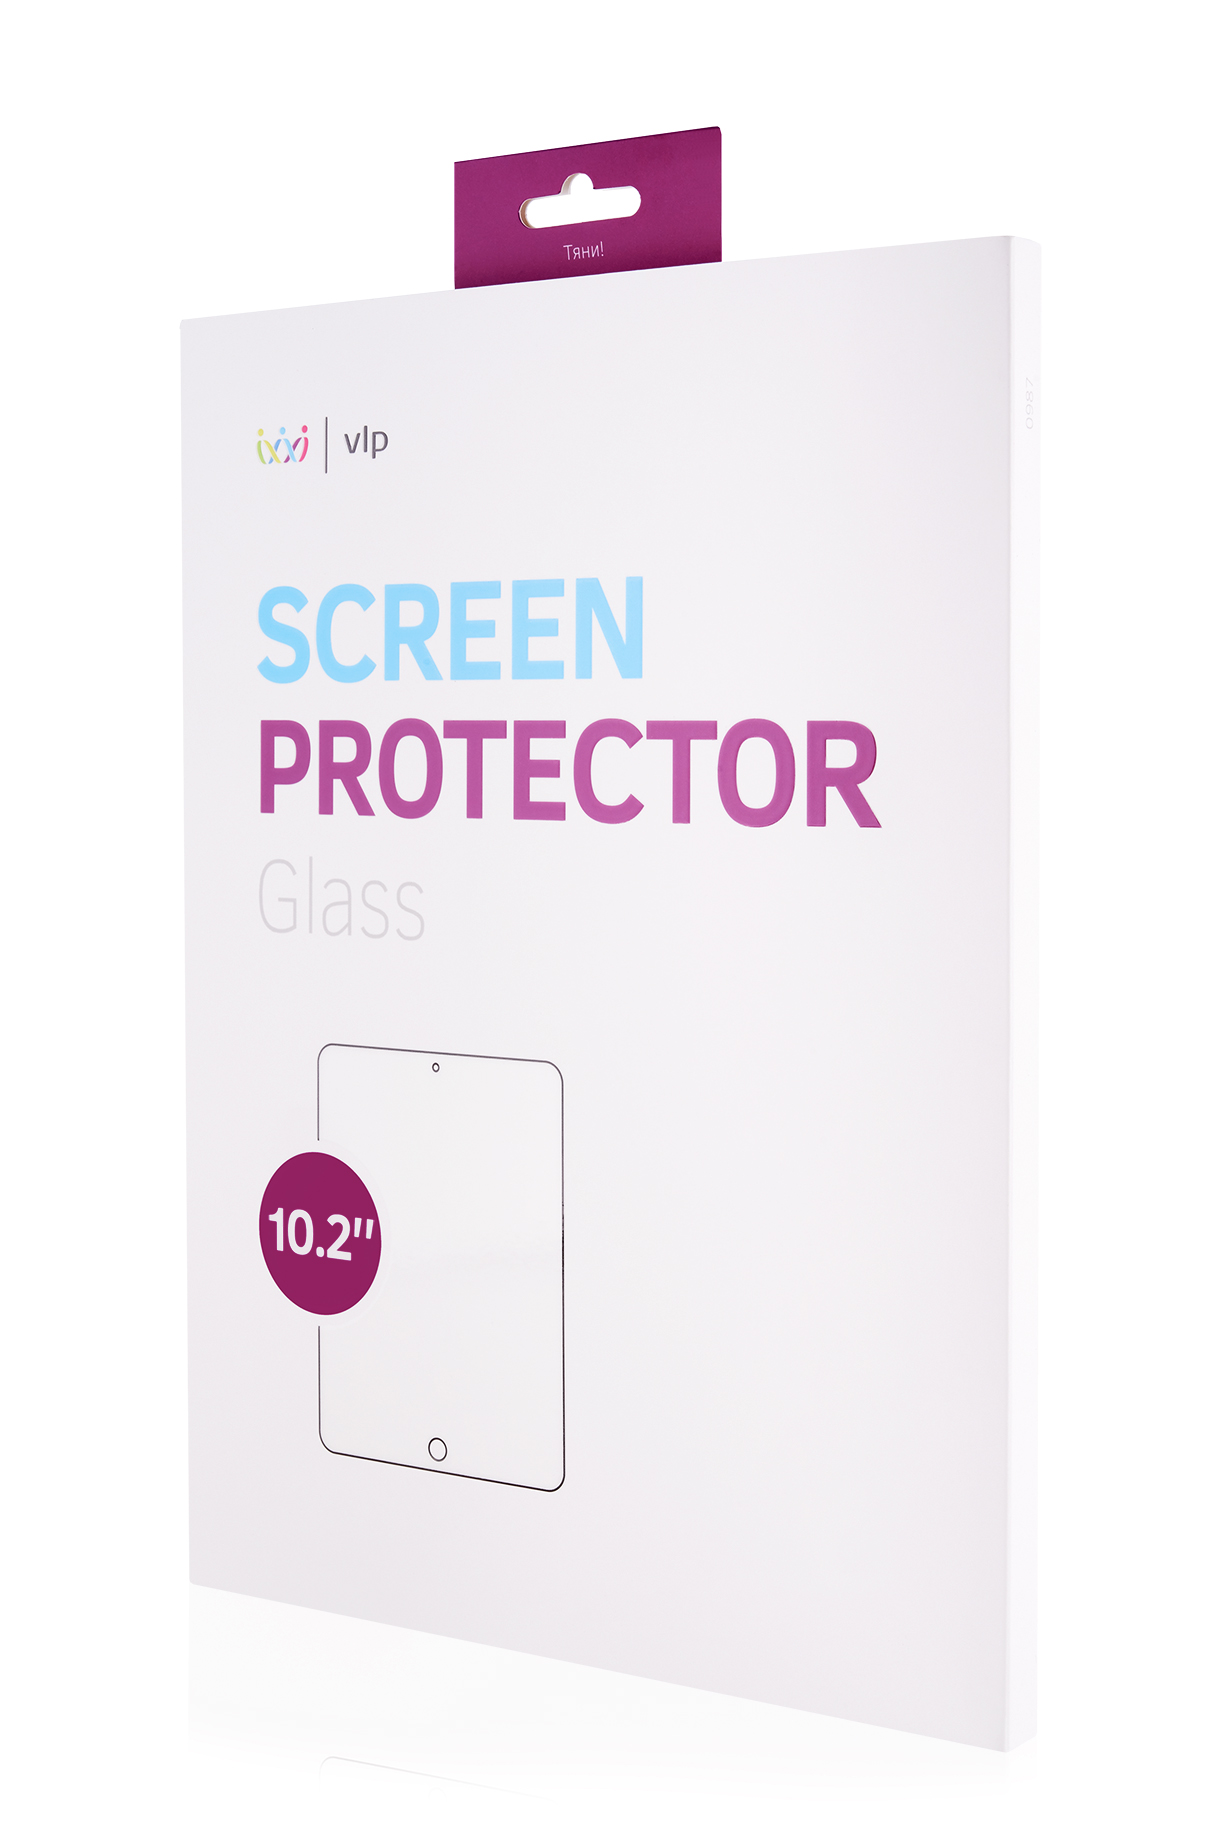 Стекло защитное VLP для iPad Pro 10.2, олеофобное защитное стекло vlp стекло защитное vlp для ipad pro 10 2 олеофобное рамка черная